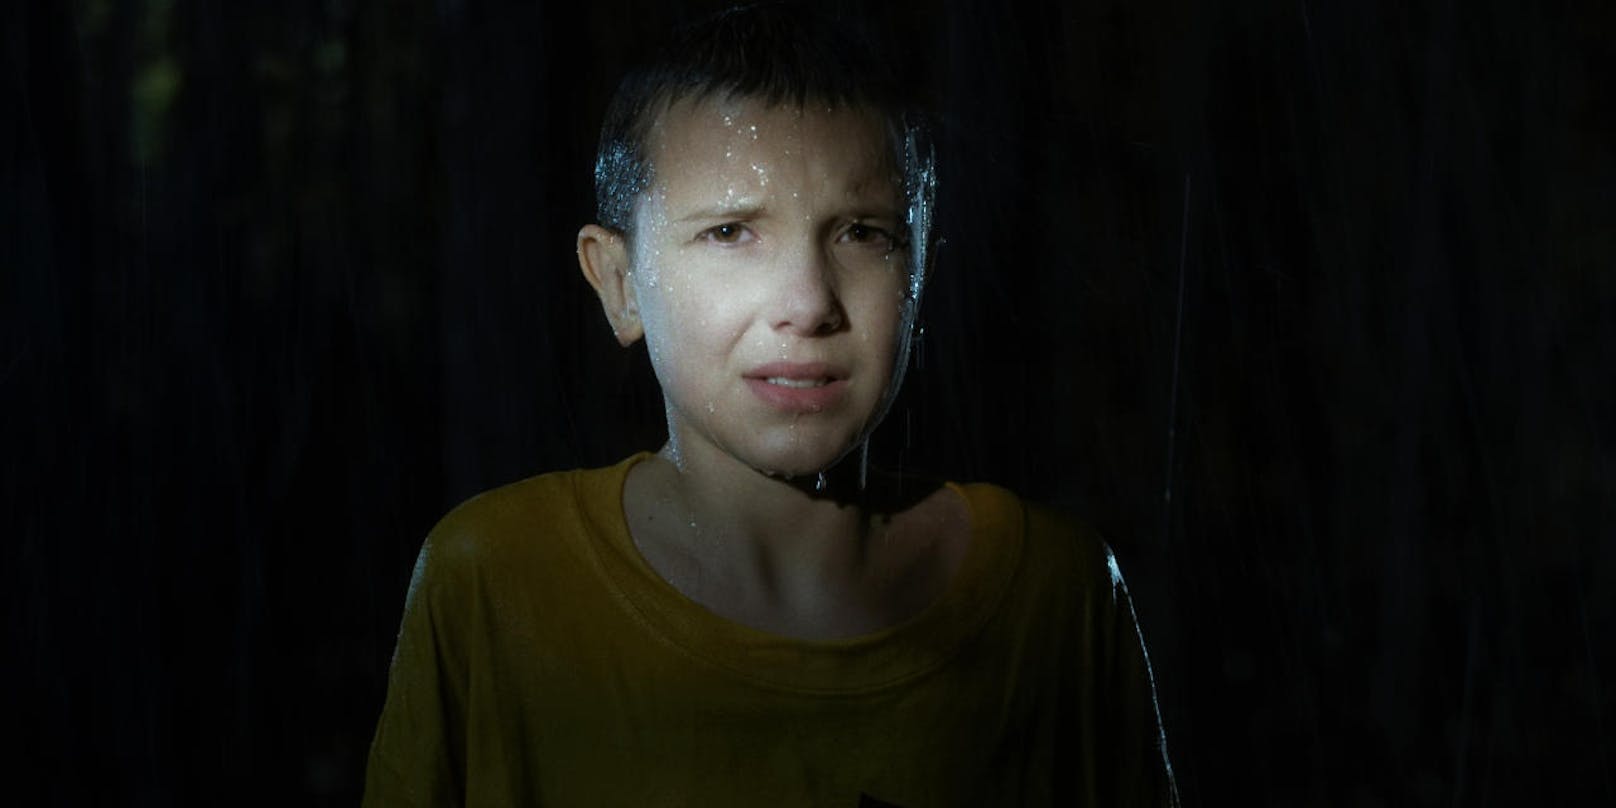 Schauspielerin Millie Bobby Brown als Eleven in "Stranger Things"